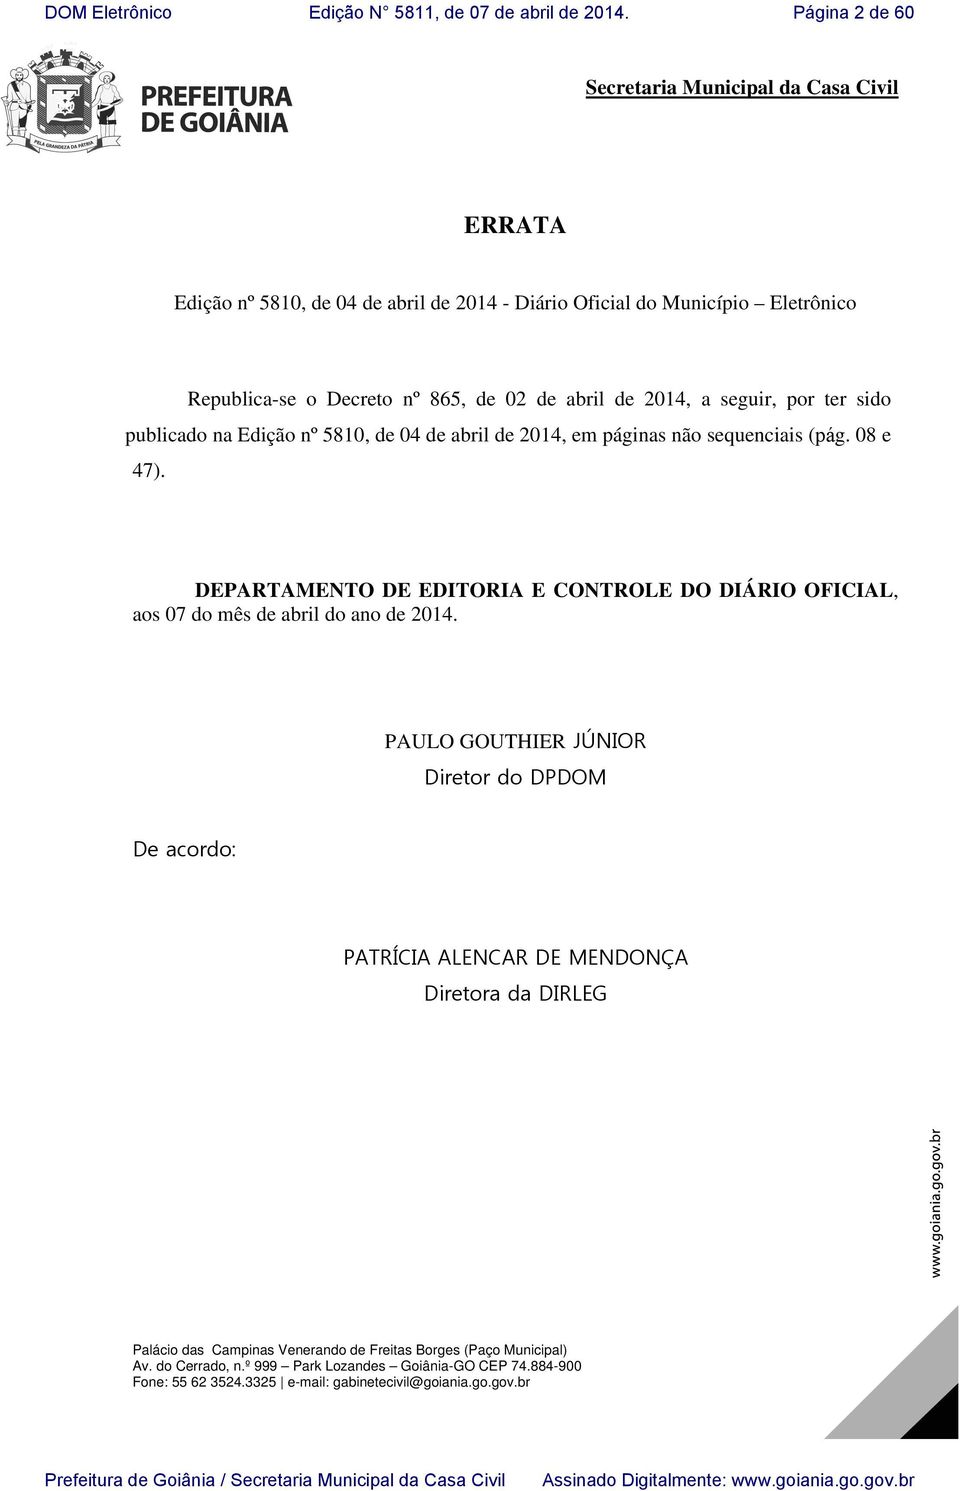 DEPARTAMENTO DE EDITORIA E CONTROLE DO DIÁRIO OFICIAL, aos 07 do mês de abril do ano de 2014.